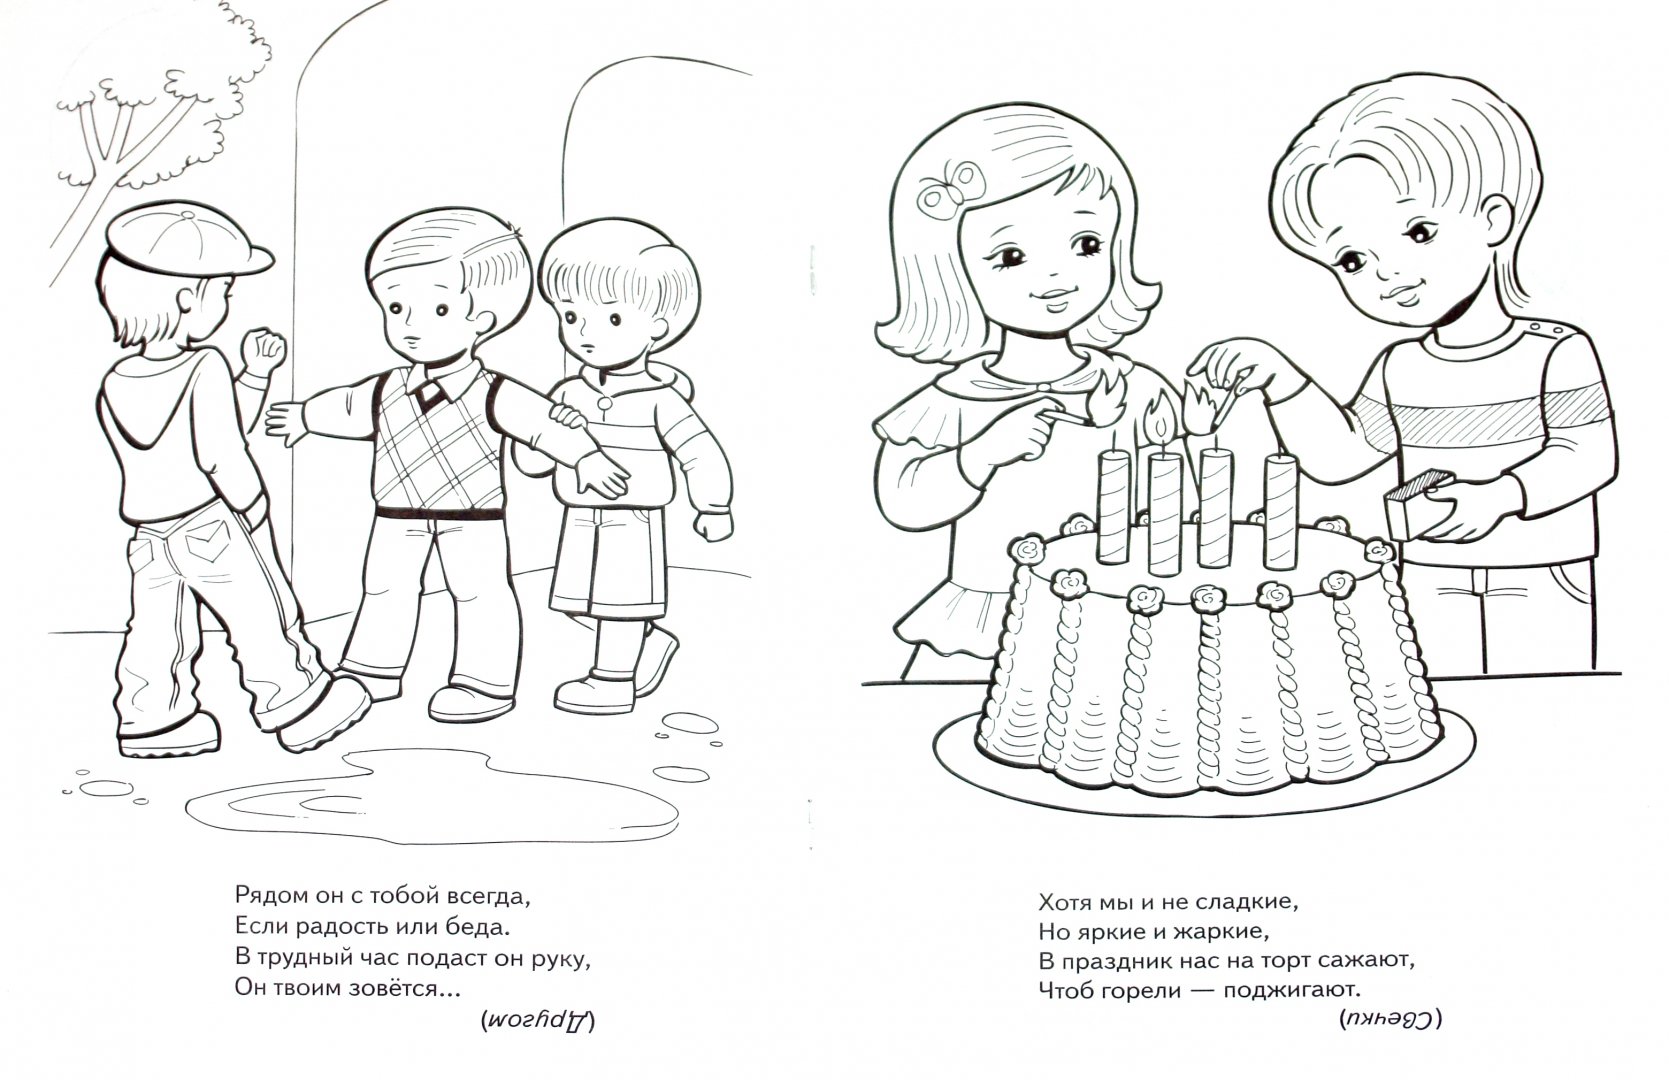 Иллюстрация 1 из 5 для "Приходи на день рождения..." в стихах. Книжка-раскраска - Анна Баранюк | Лабиринт - книги. Источник: Лабиринт